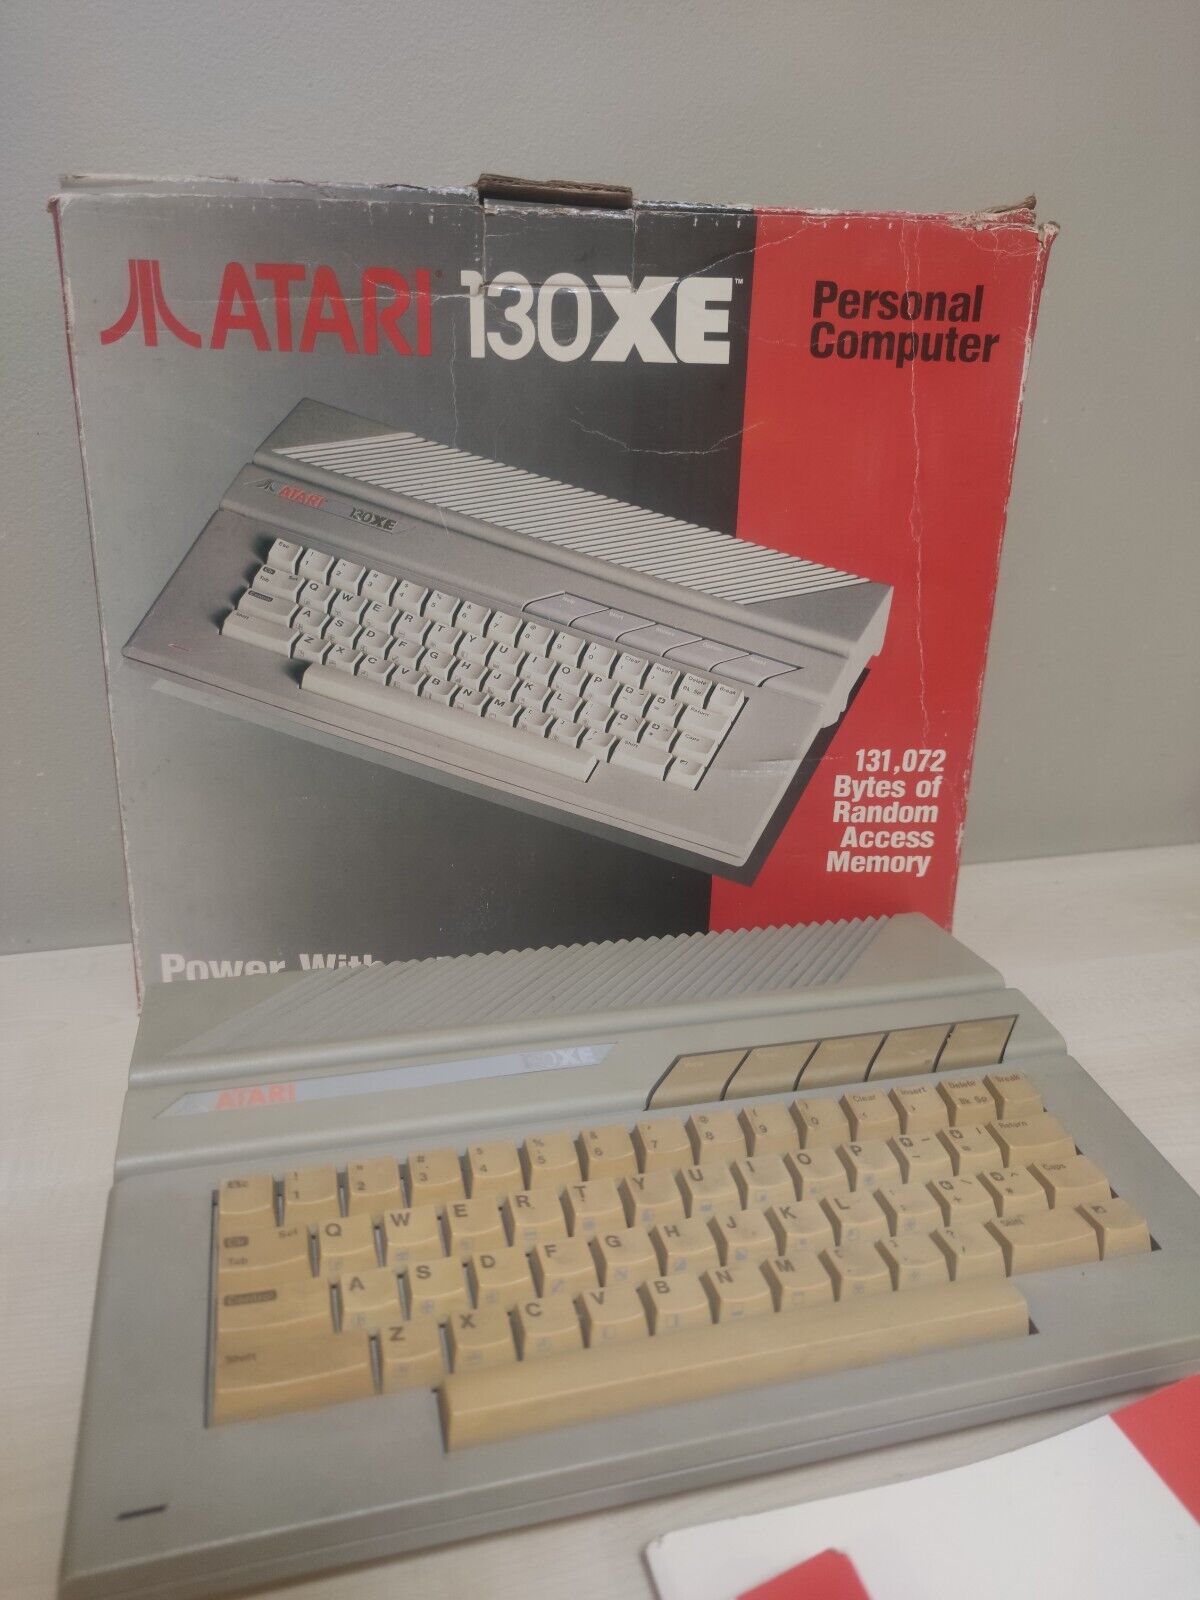 Atari 130XE Personal Computer Desktop